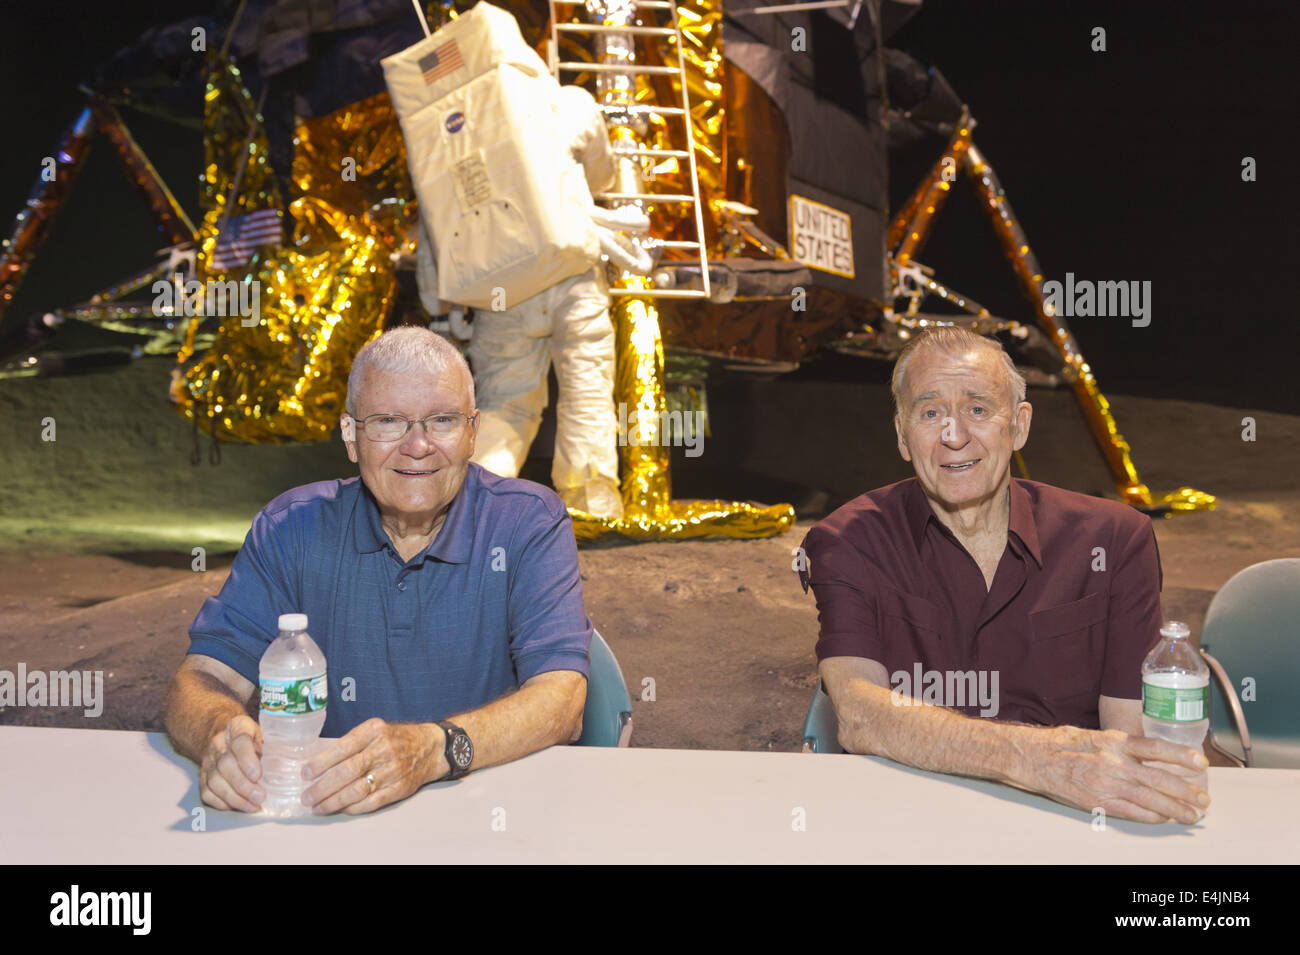 12. Juli 2014 - Garden City, New York, US - L-R, sind ehemalige NASA Apollo-Astronauten, FRED HAISE und WALTER CUNNINGHAM im Sommer 69 Feier im Long Island Cradle of Aviation Museum, auf der 45. Jahrestag der NASA Apollo 11 LEM, Ausflug Mondfähre, Landung auf dem Mond 20. Juli 1969 statt. Haise, der Pilot der Mondlandefähre Apollo 13-Mission und der Pilot der Mondlandefähre der Apollo 7 Mission Cunningham waren im LEM Raum während der Wiedervereinigung der ehemaligen Mitarbeiter von Northrop Grumman Aerospace Corporation. Dahinter steckt die Mondlandefähre LM-13 für Apollo 18 Mission zu Copern bestimmt Stockfoto